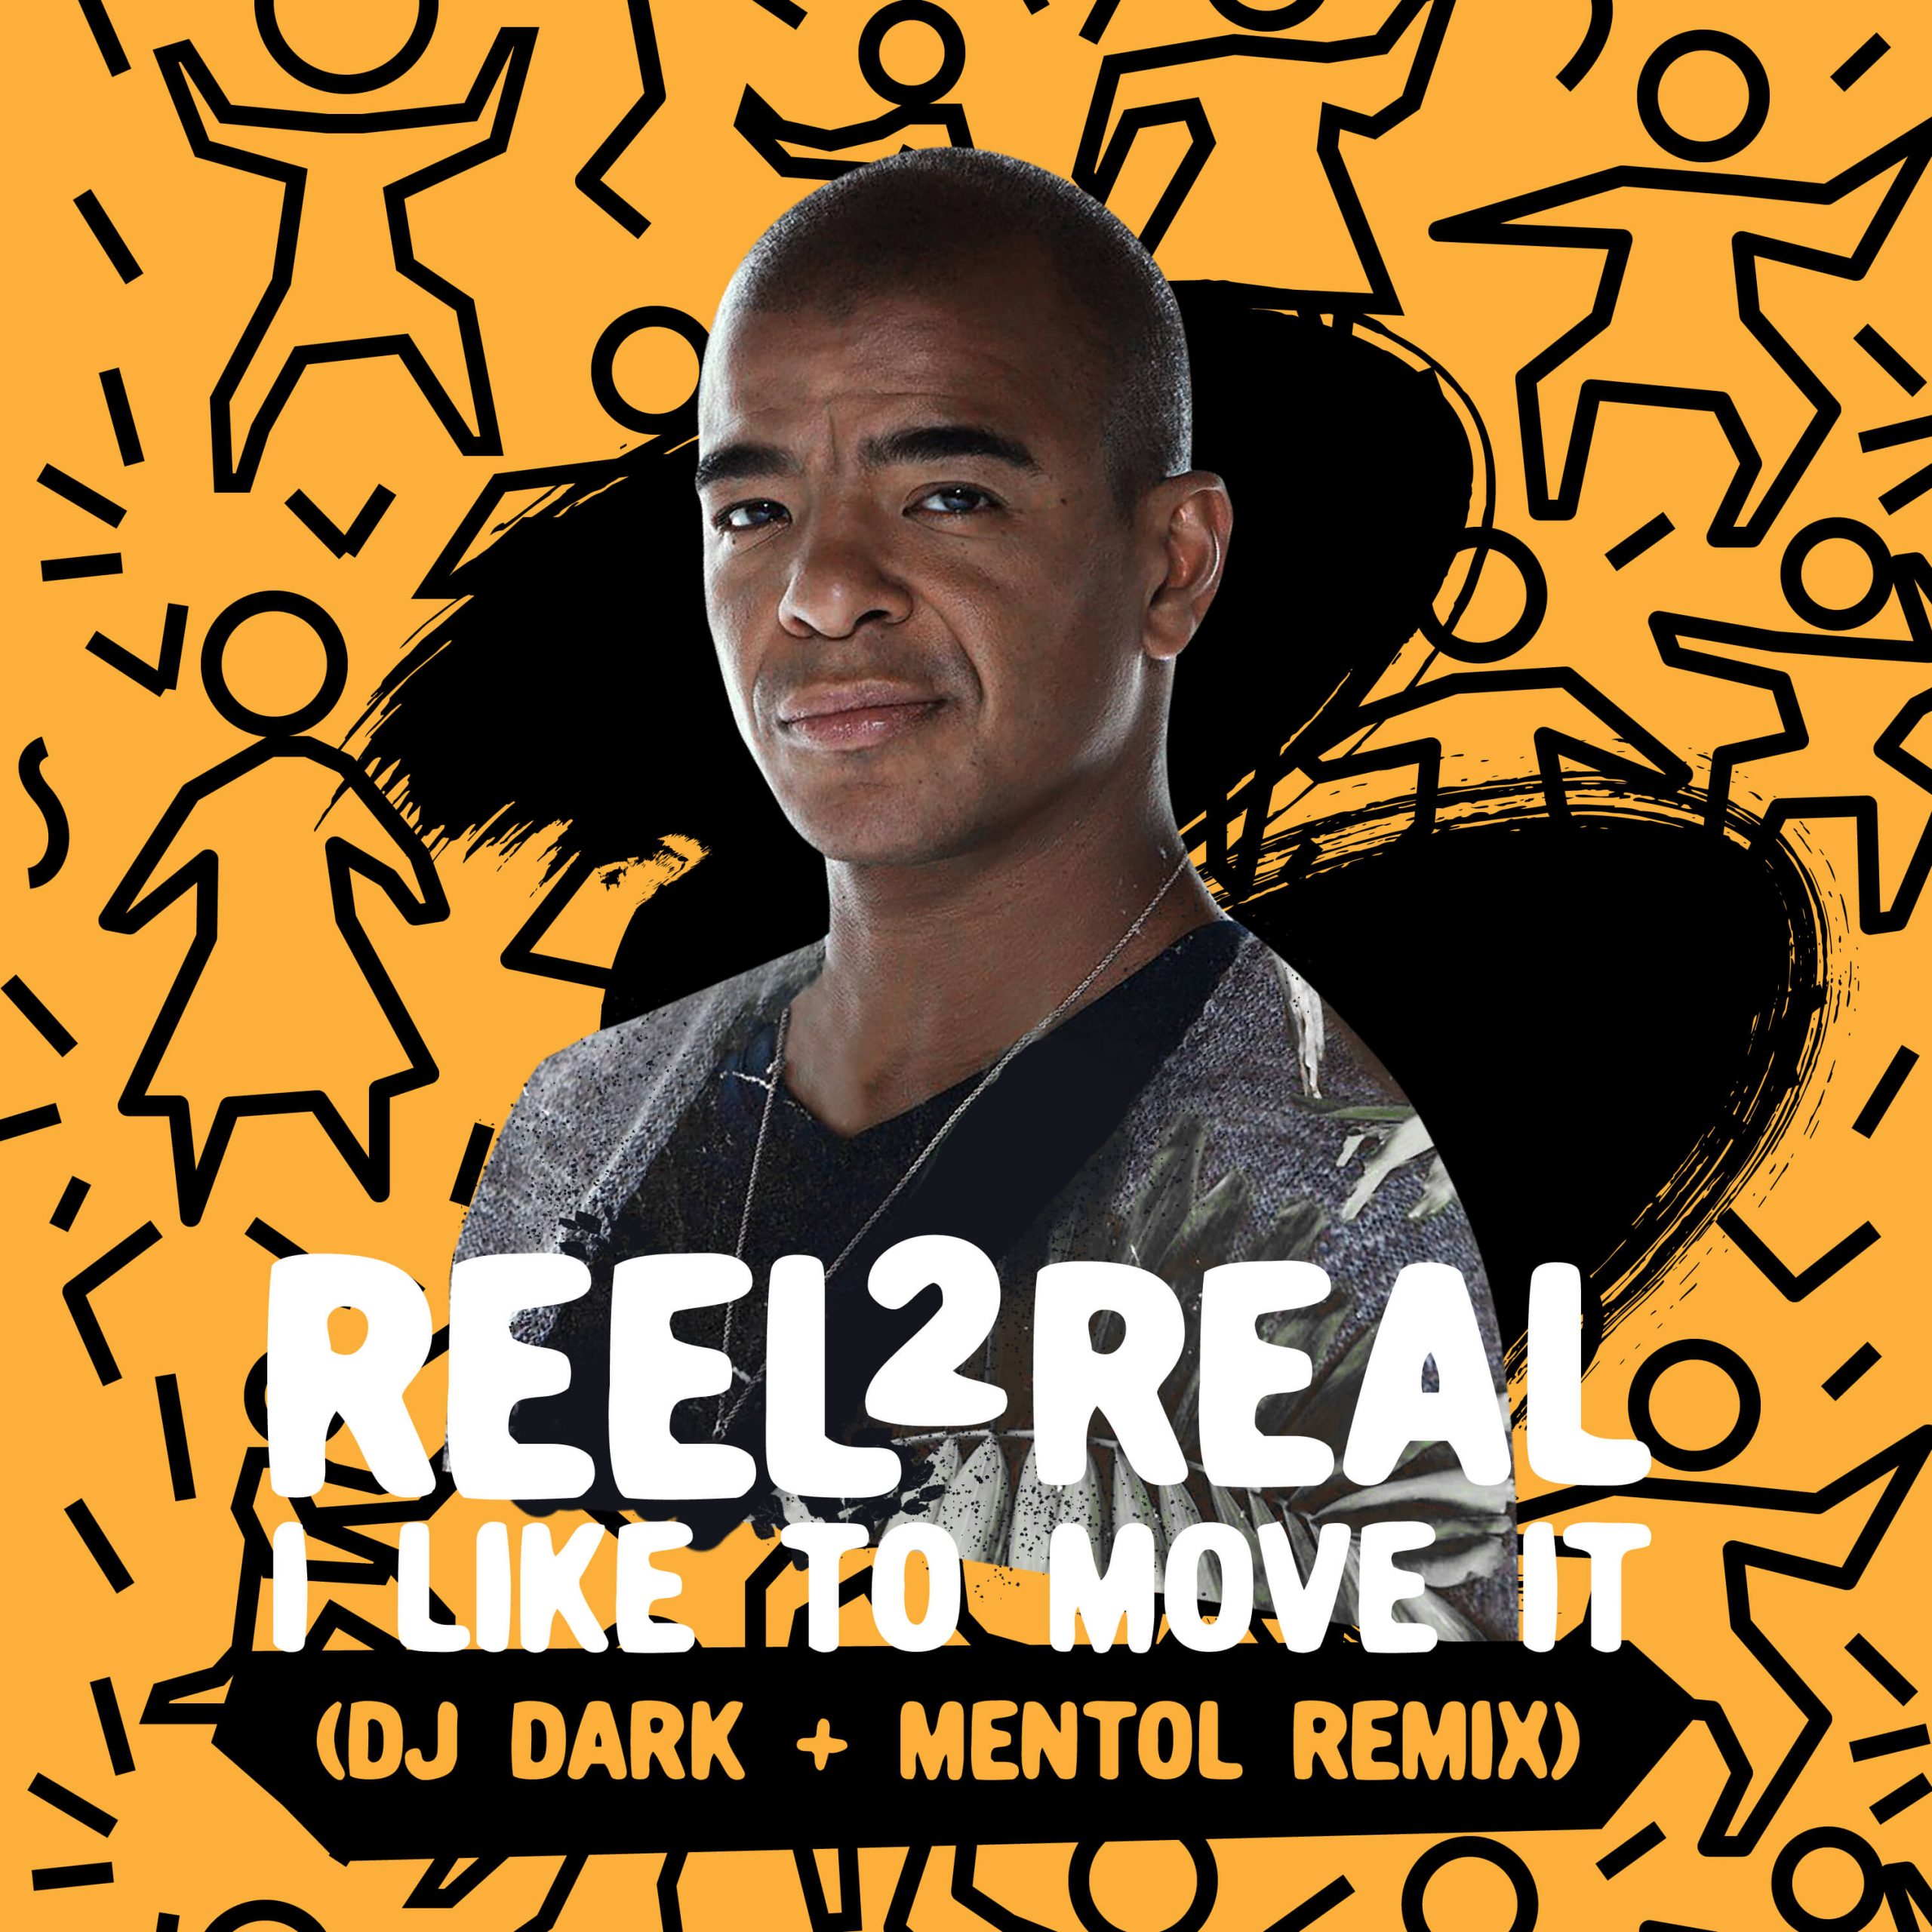 Reel 2 Real - I Like To Move It (Dj Dark & Mentol Remix) -